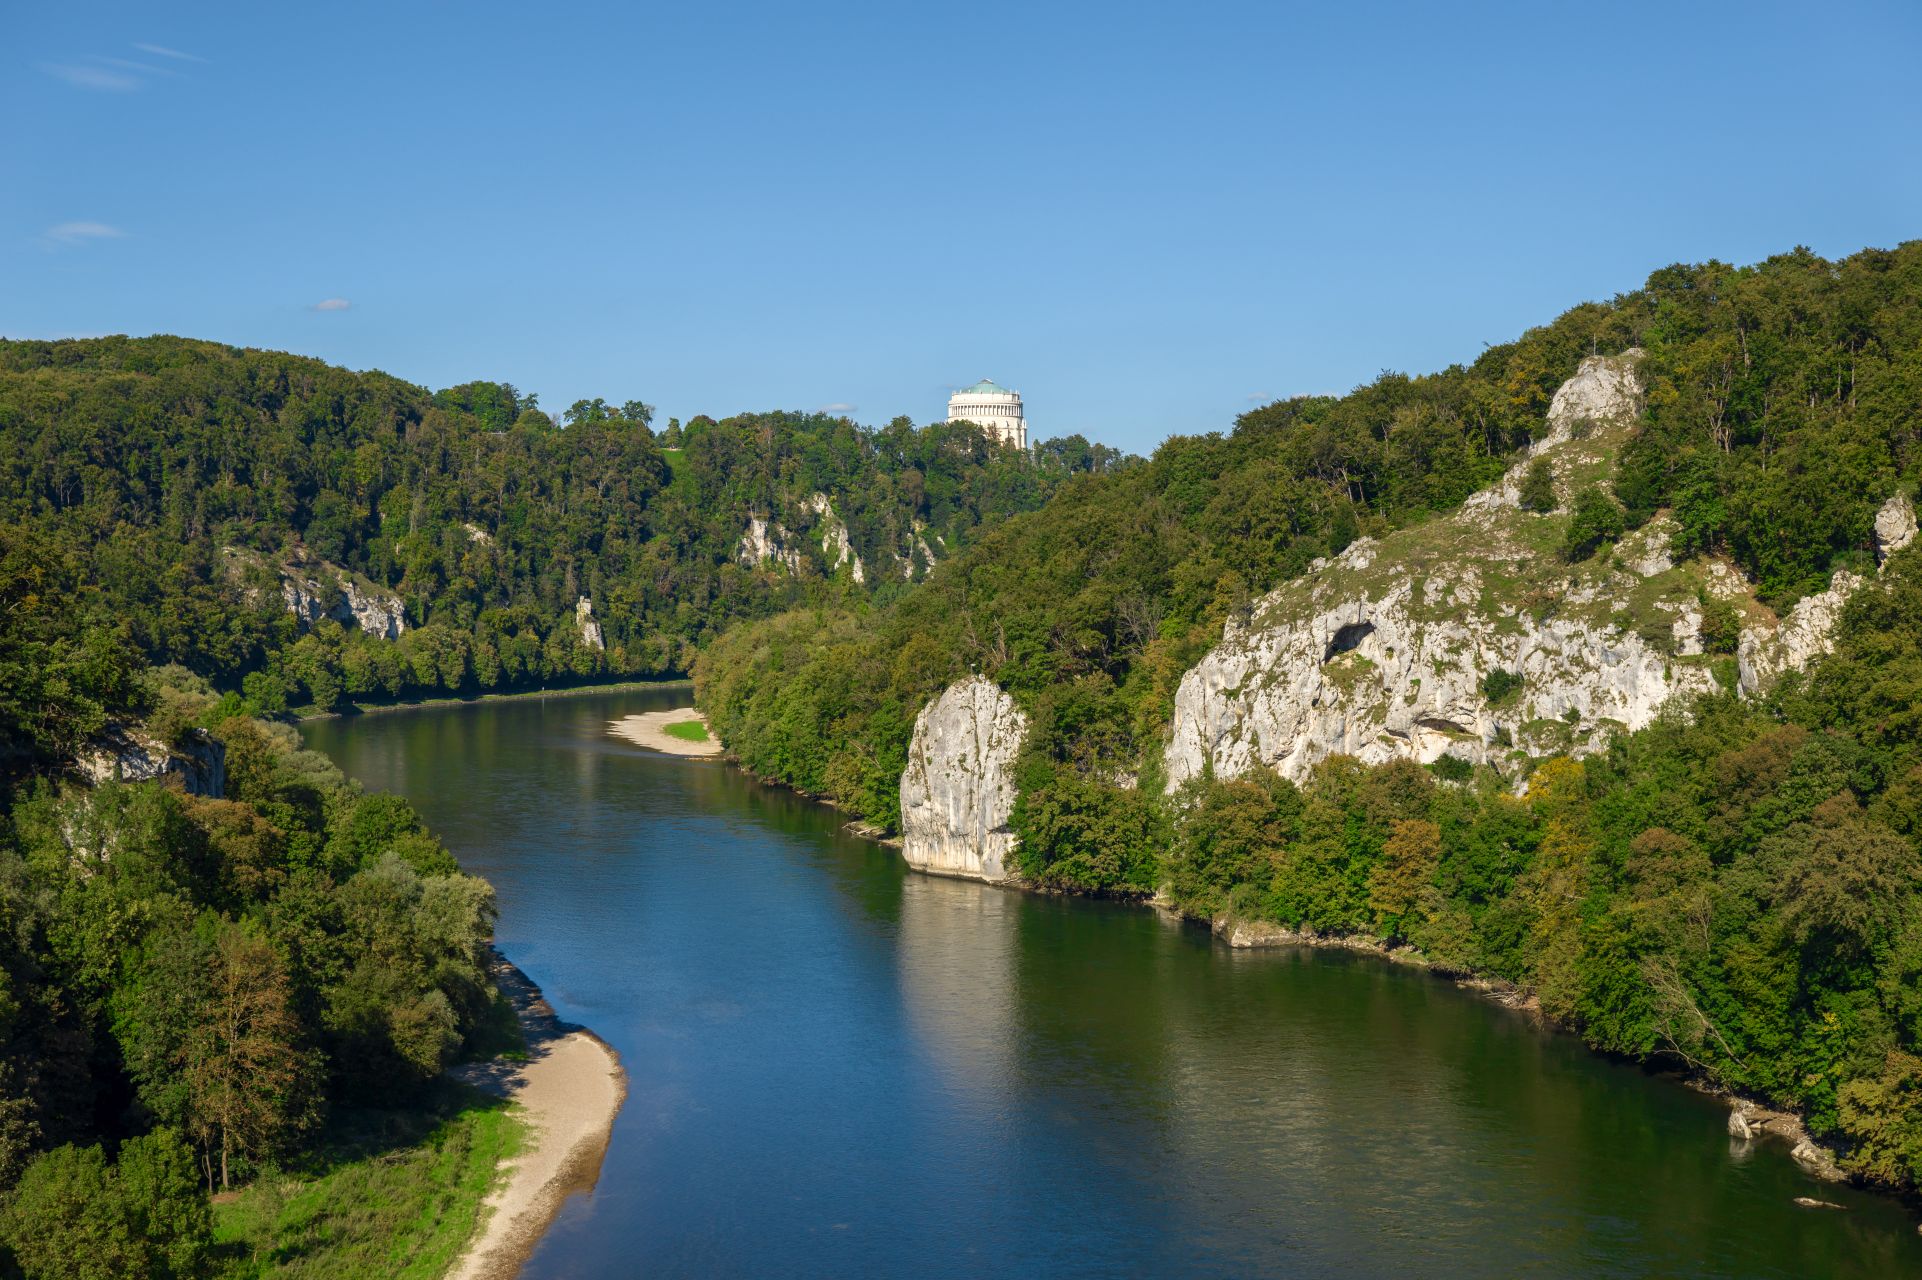 Die Donau windet sich im Nationalen Naturmonument „Weltenburger Enge‟ zwischen dichten Wäldern und schroffen Felsen hindurch. Im Hintergrund ragt die Befreiungshalle Kelheim über die Baumwipfel.